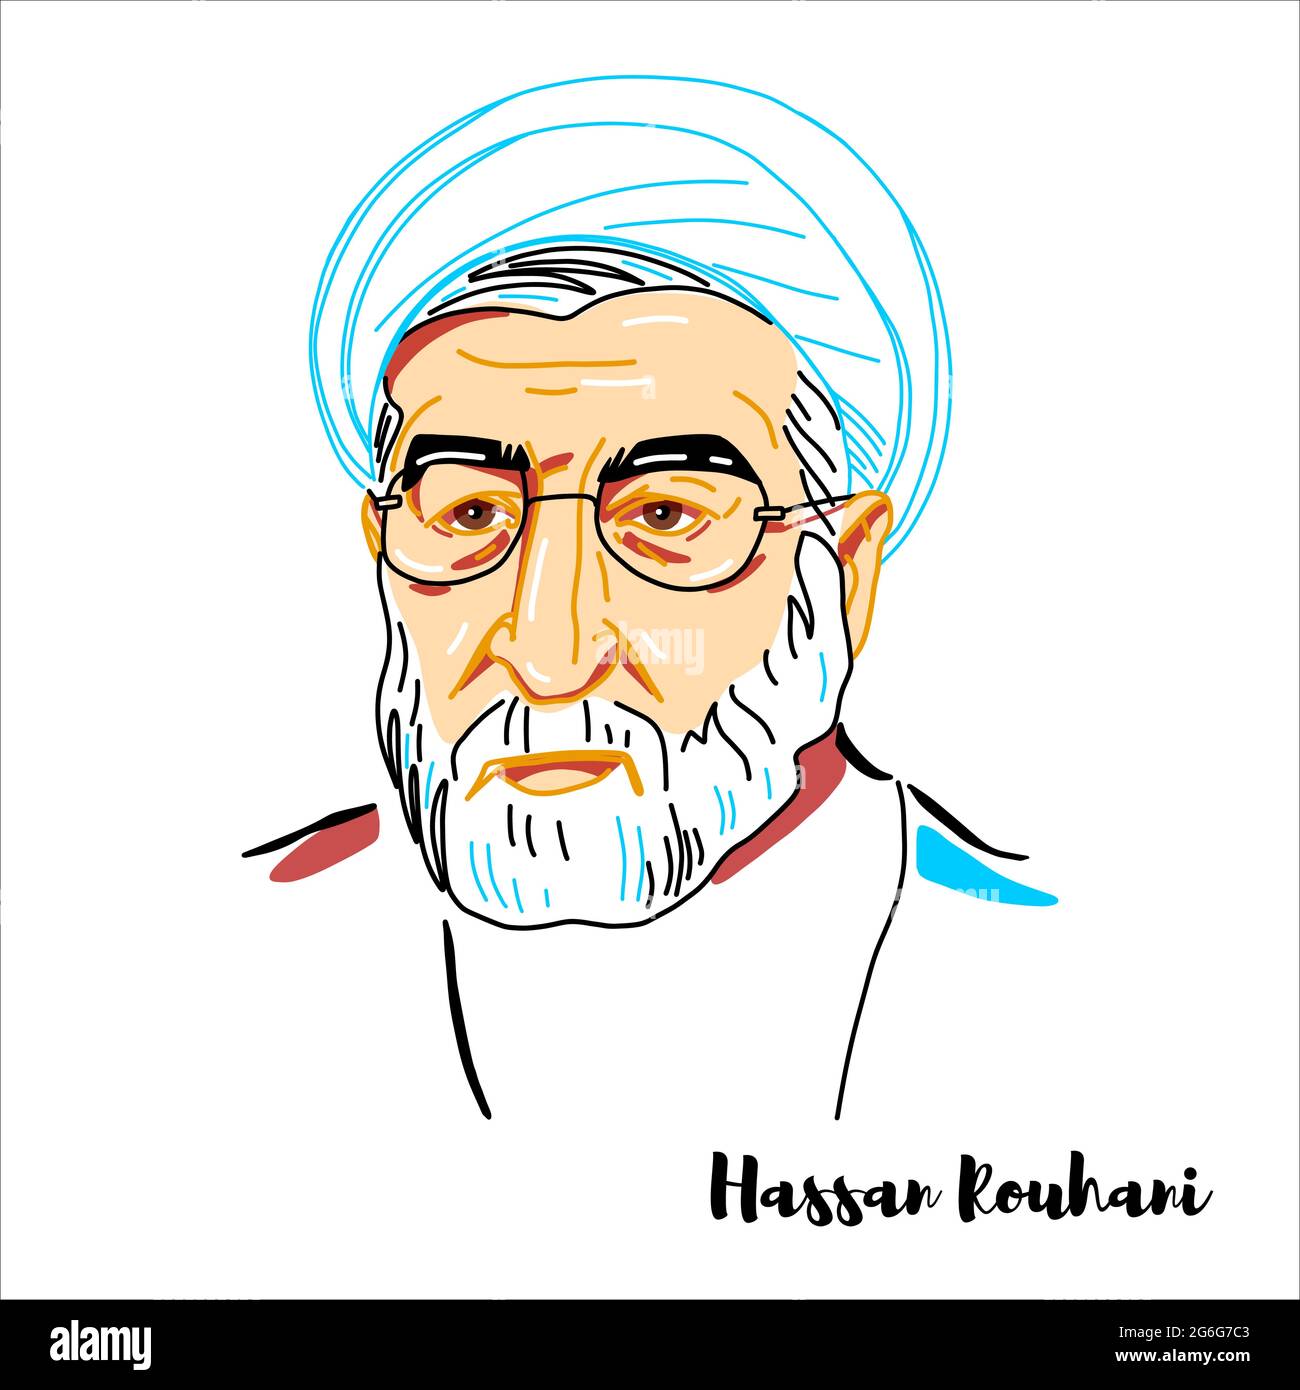 RUSSIE, MOSCOU - 25 avril 2019 : Hassan Rouhani a gravé le portrait vectoriel avec des contours d'encre. Président de l'Iran depuis 2013, avocat, universitaire, ancien di Illustration de Vecteur